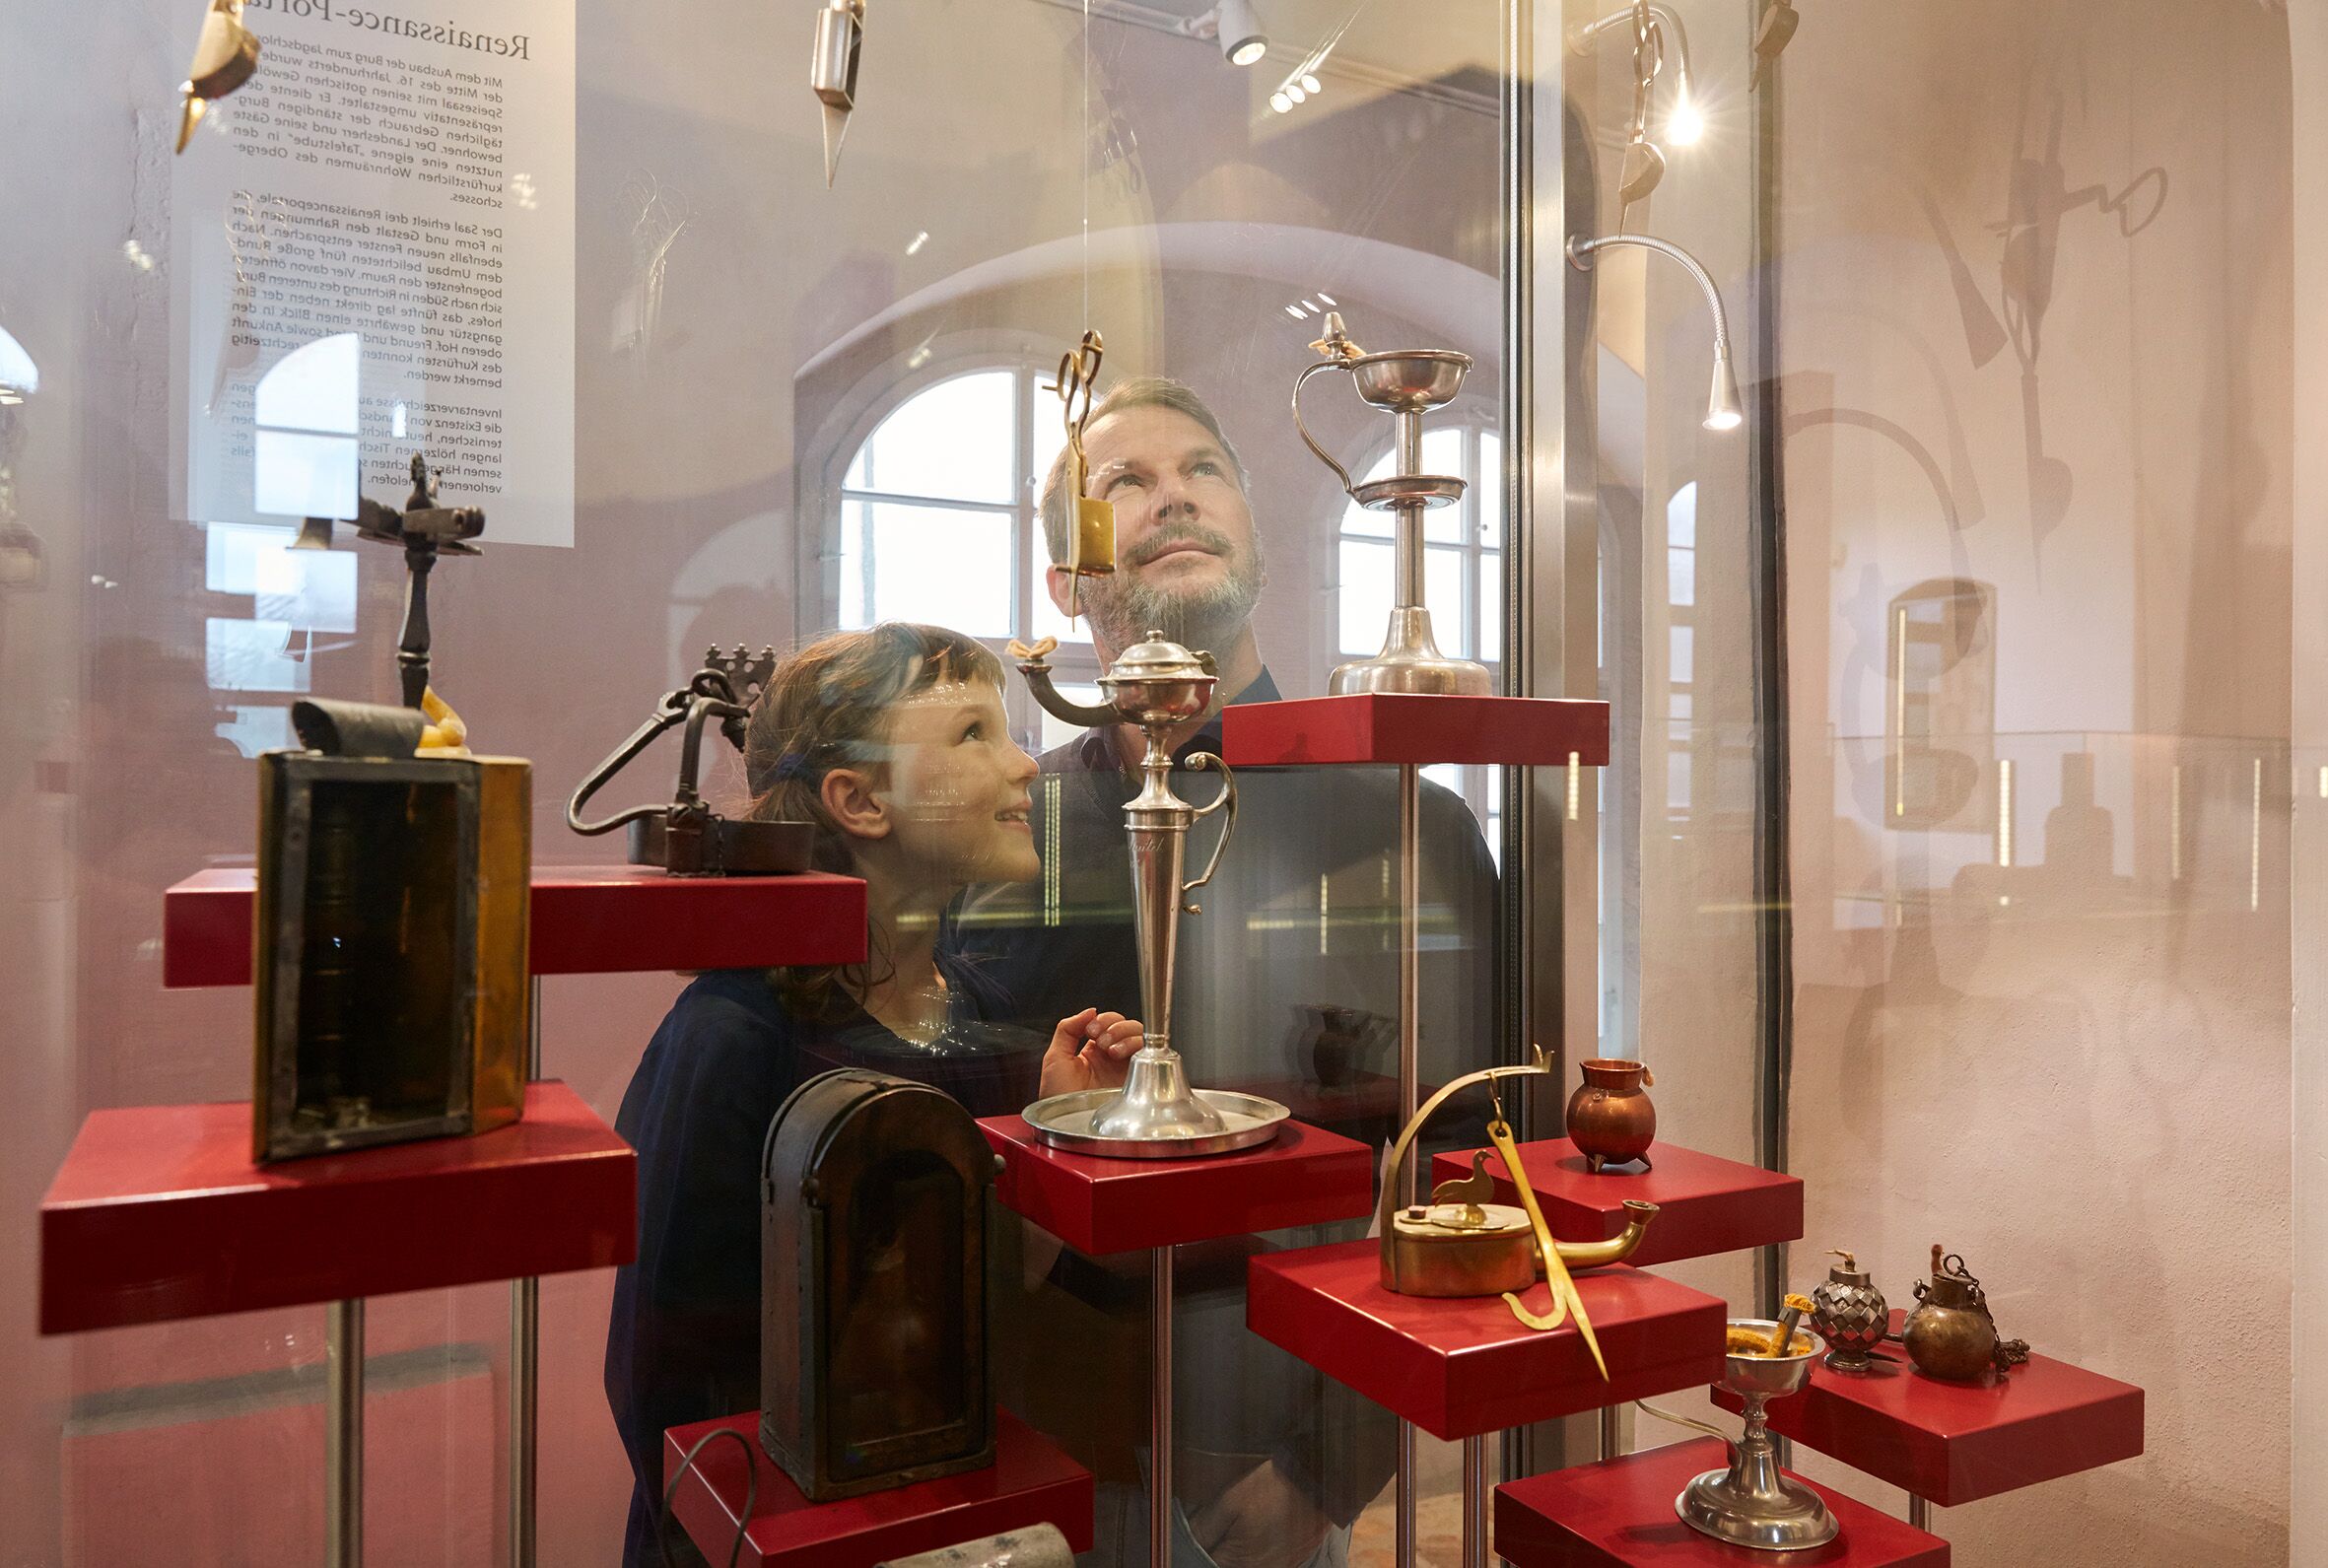 Foto in Vergrößerungsansicht öffnen: Hinter einer Glasvitrine mit Objekten aus edlen Metallen steht ein Mädchen mit ihrem Vater. Sie betrachten sich Exponate der Ausstellung.